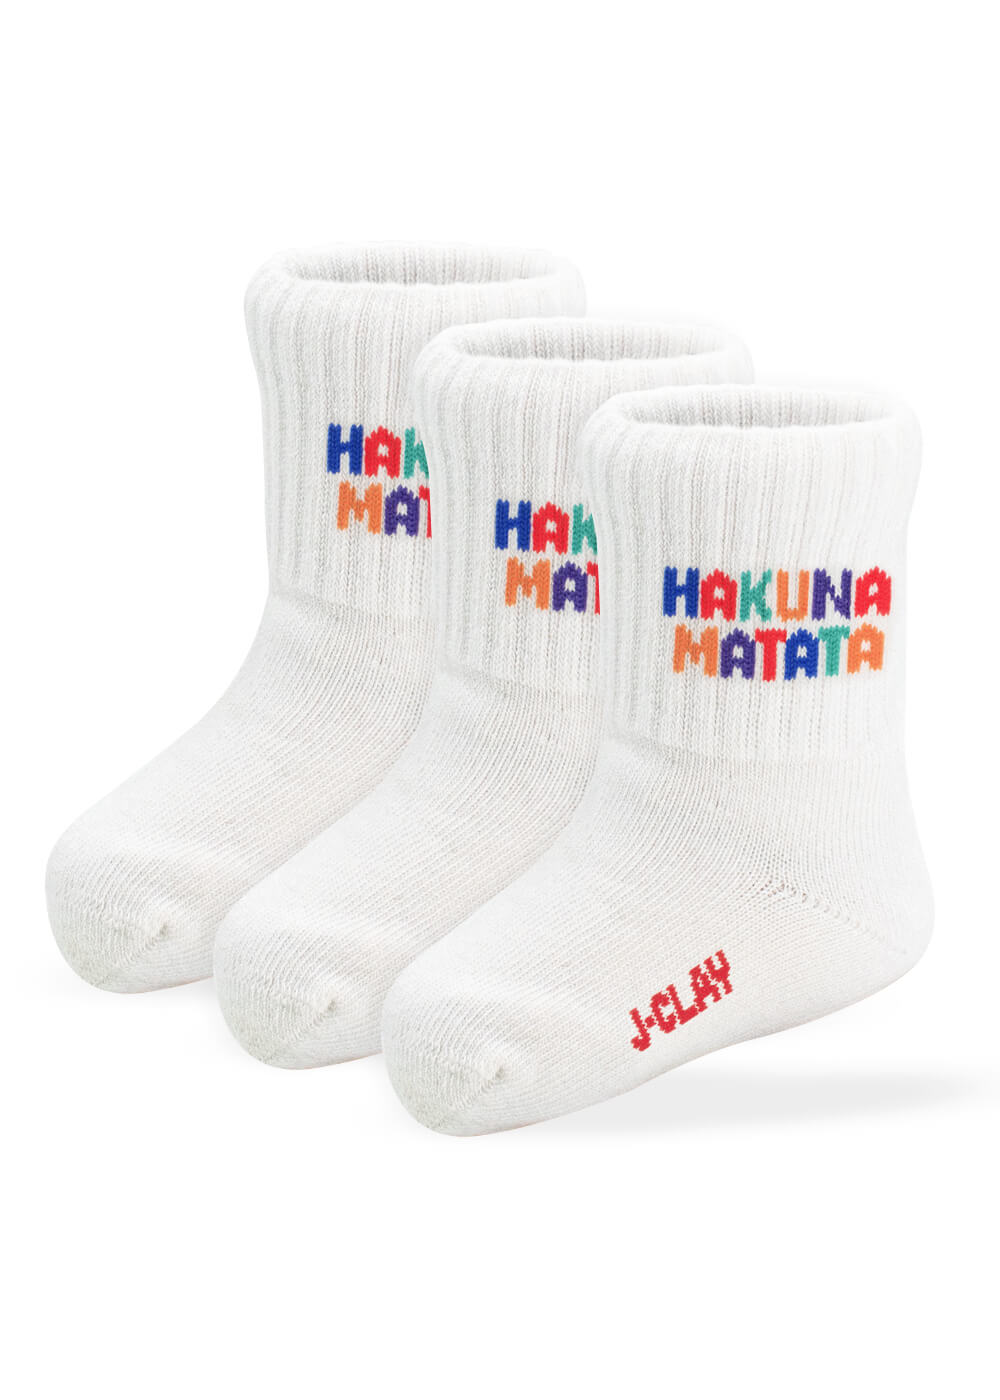 Hakuna Matata Kids (3 pairs)